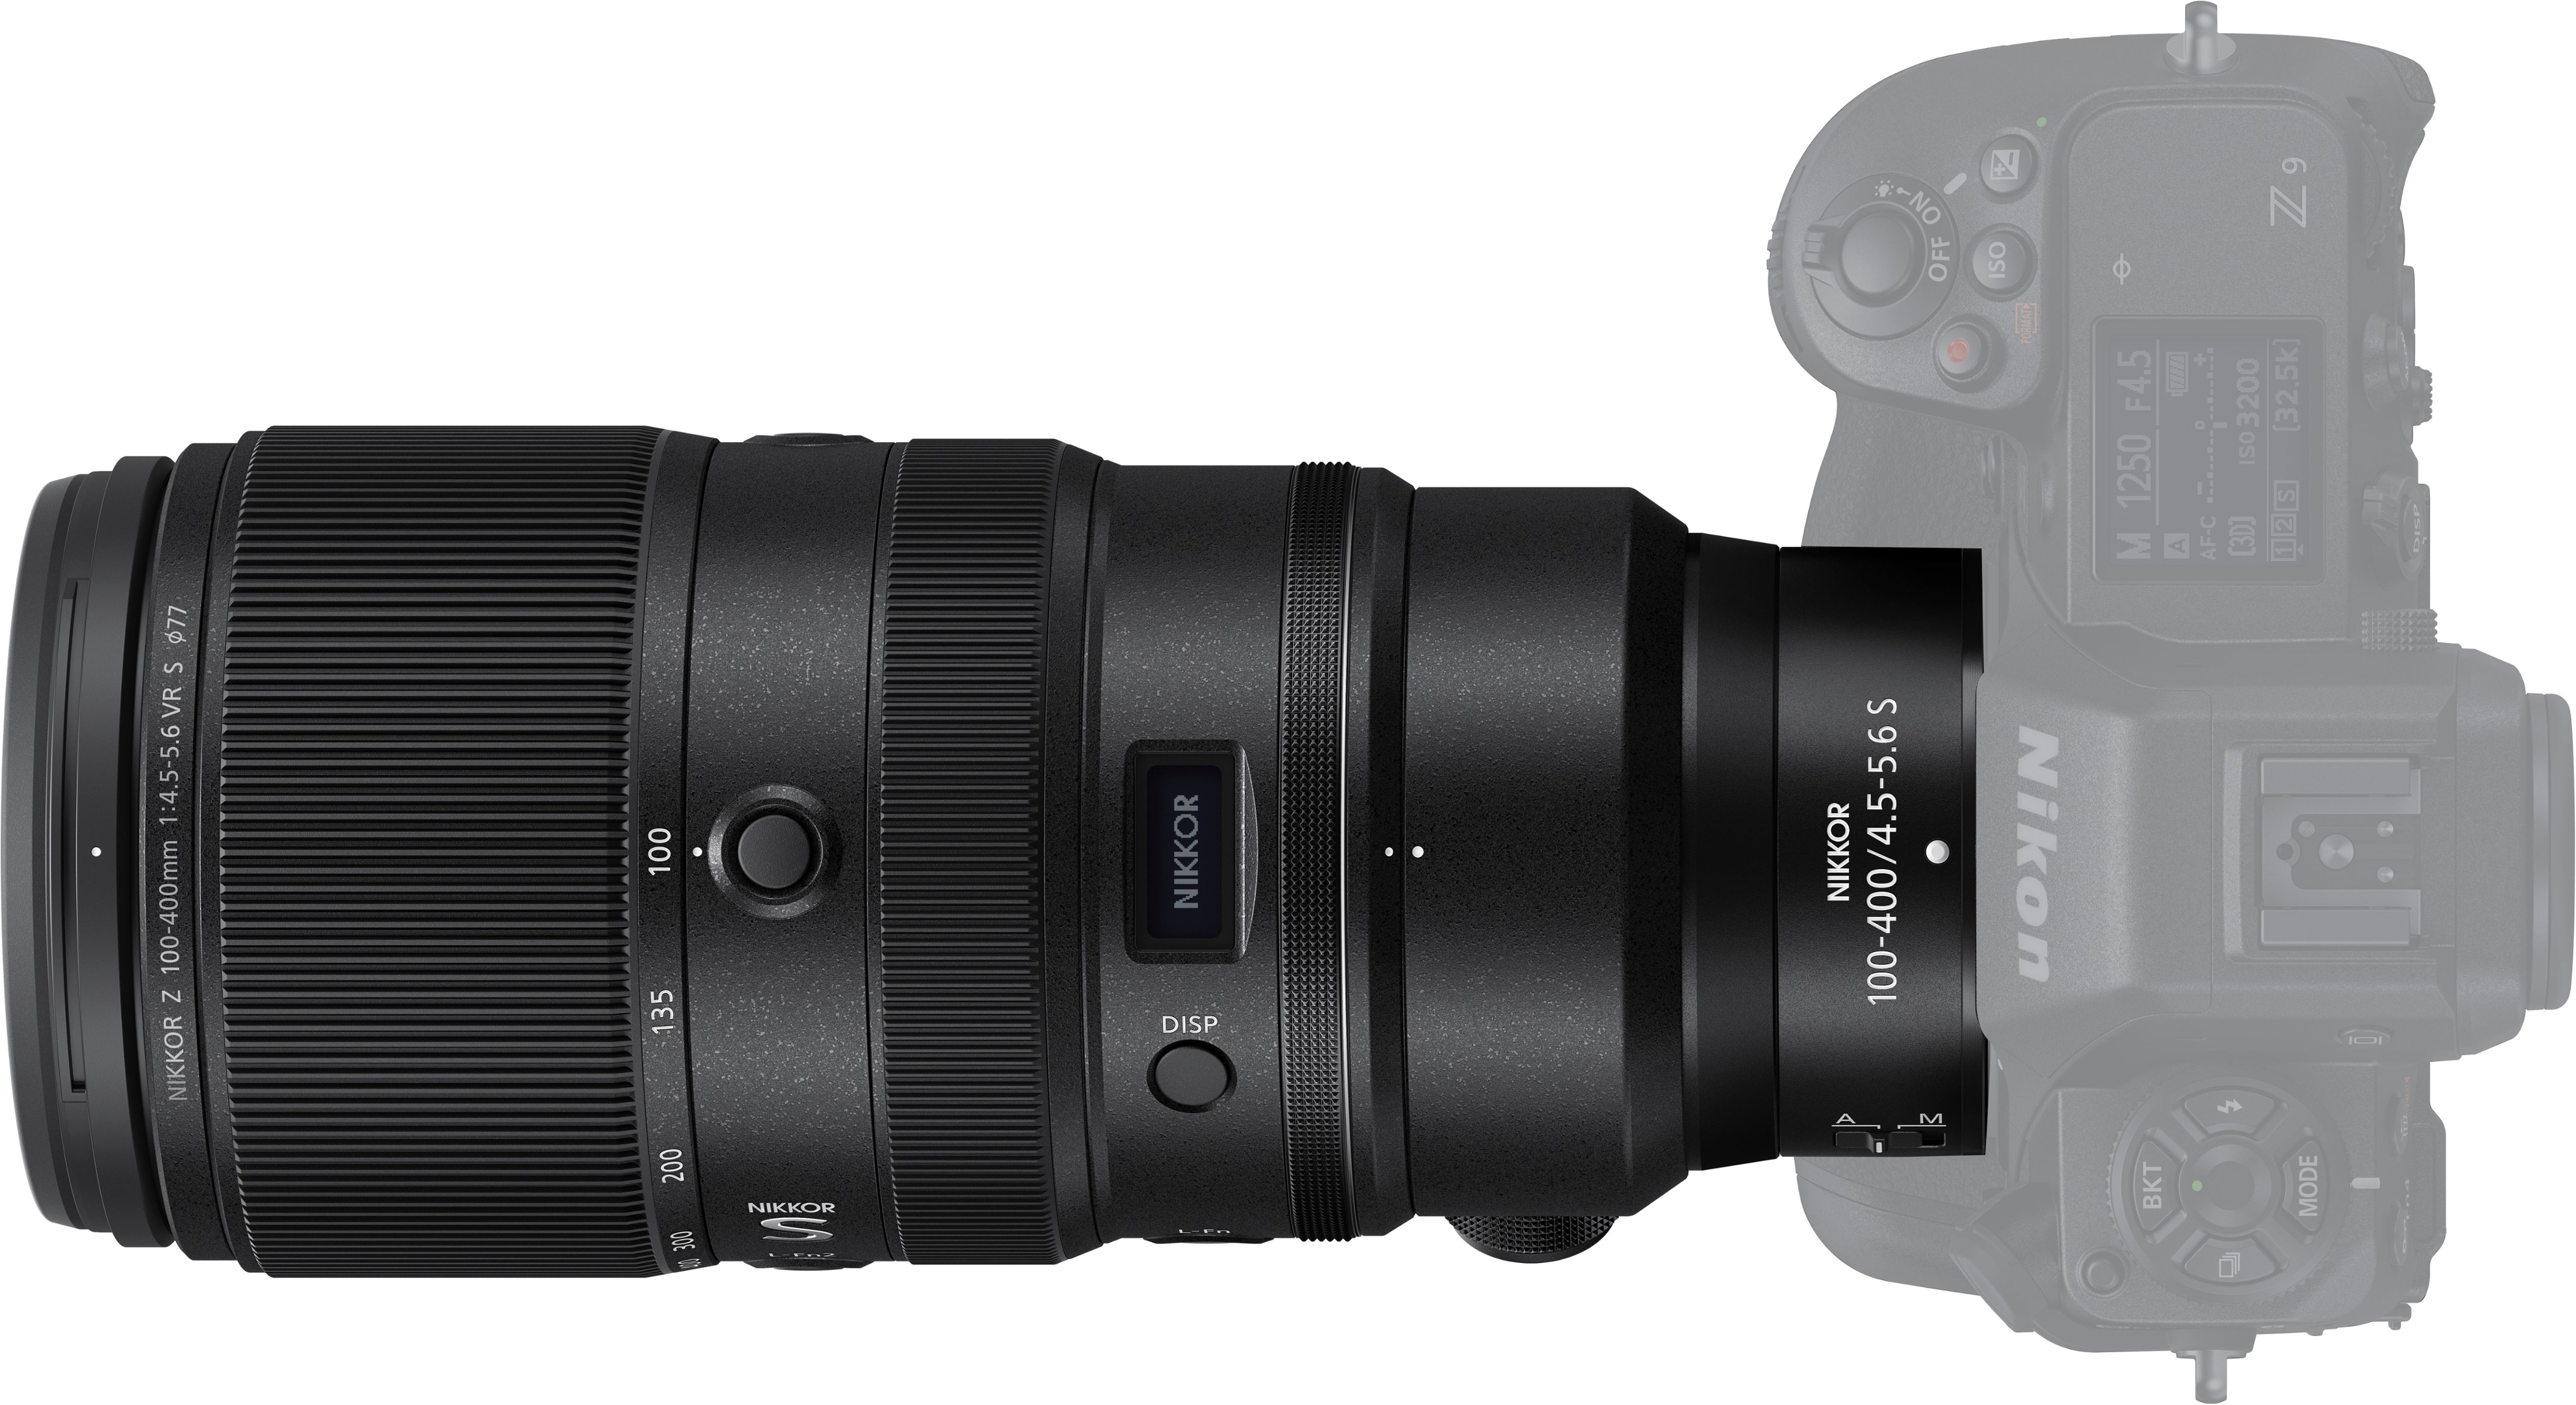 Nikon NIKKOR Z 100-400mm f/4.5-5.6 VR S Super-Telephoto Lens for Z